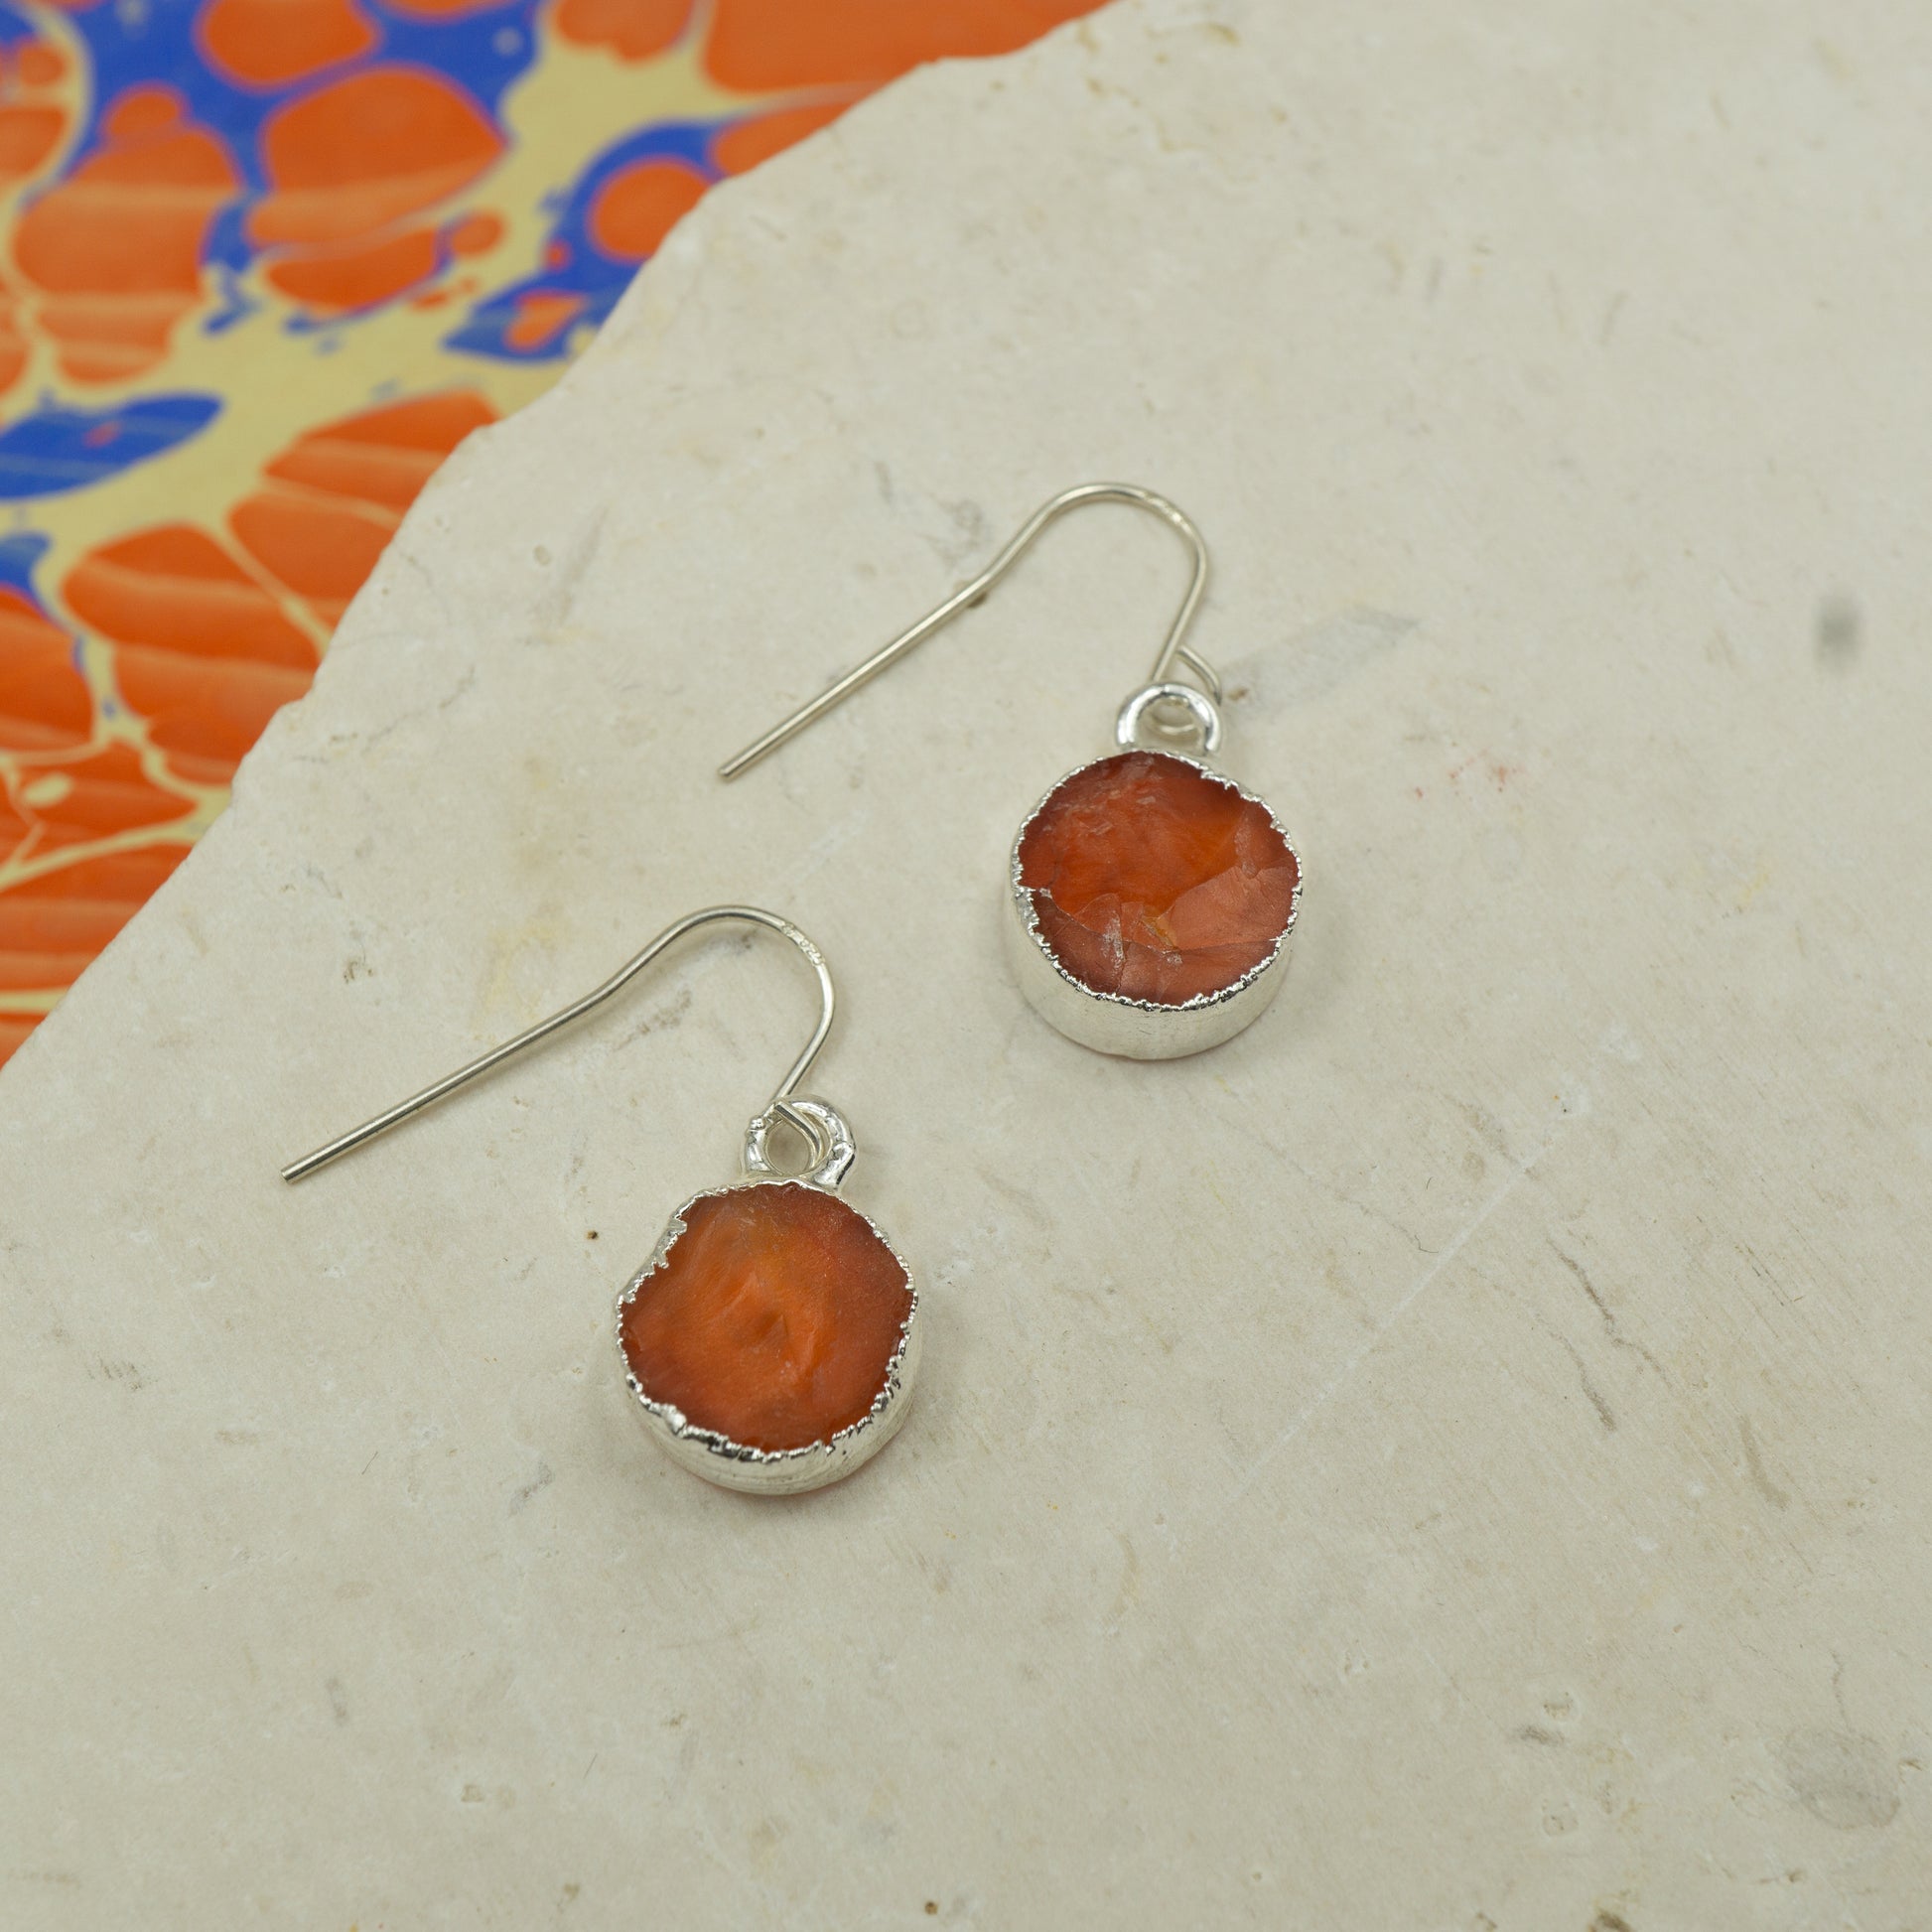 Round raw orange carnelian earrings on hooks finished in silver.